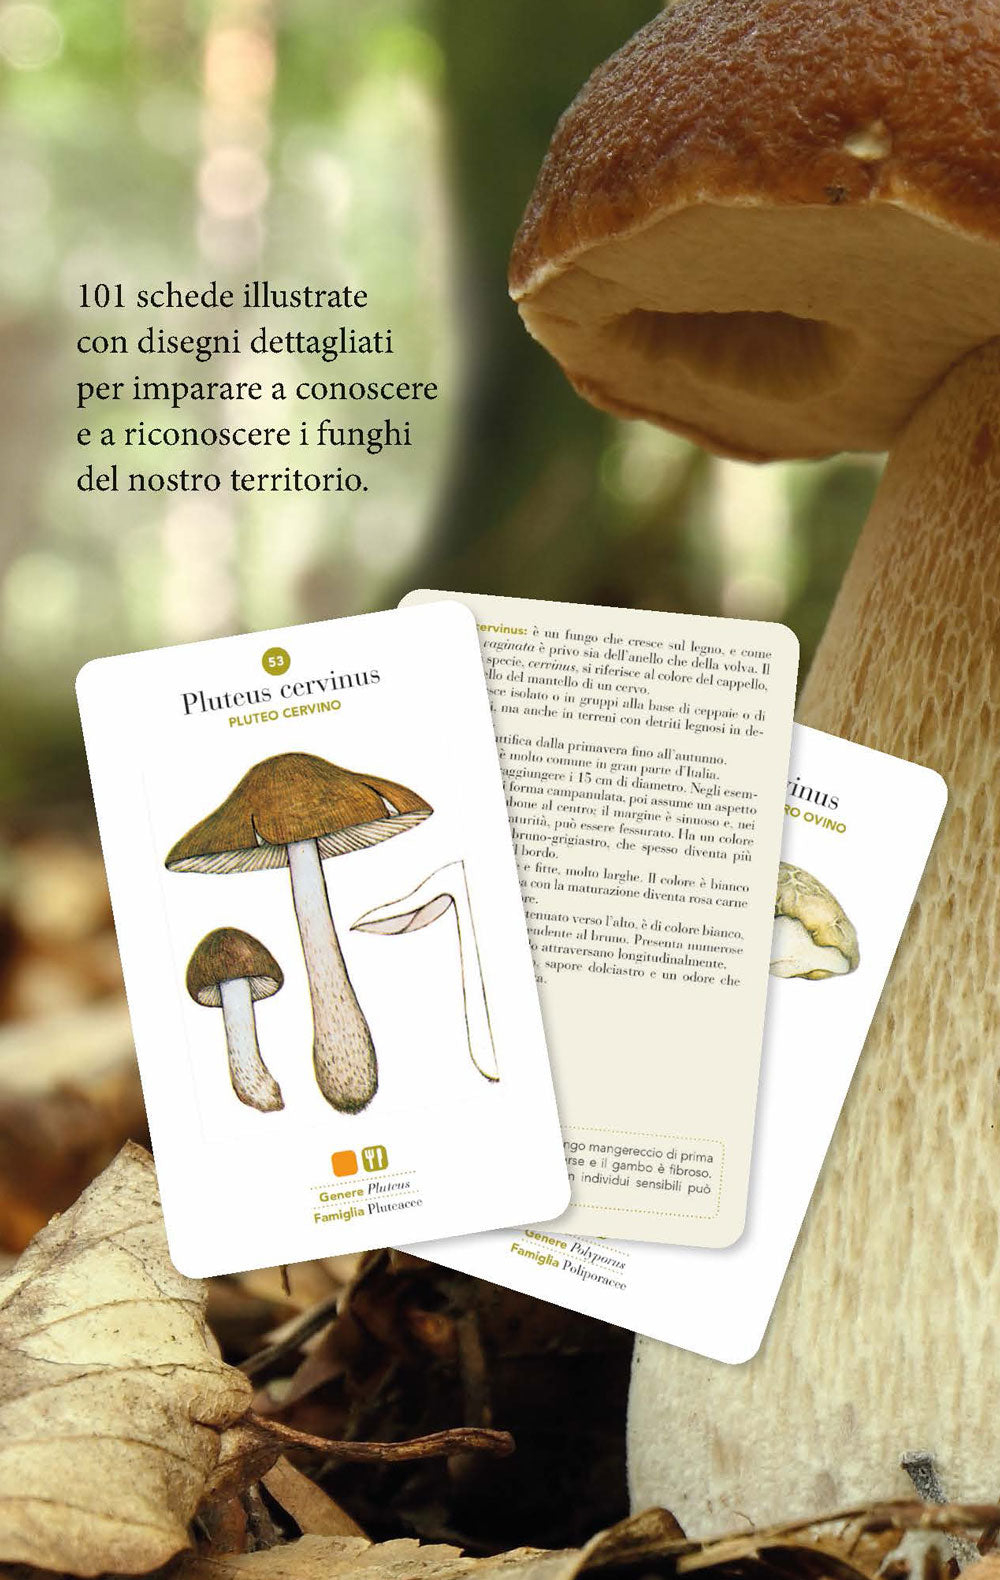 Funghi. 101 schede per conoscere, riconoscere e trovare i funghi